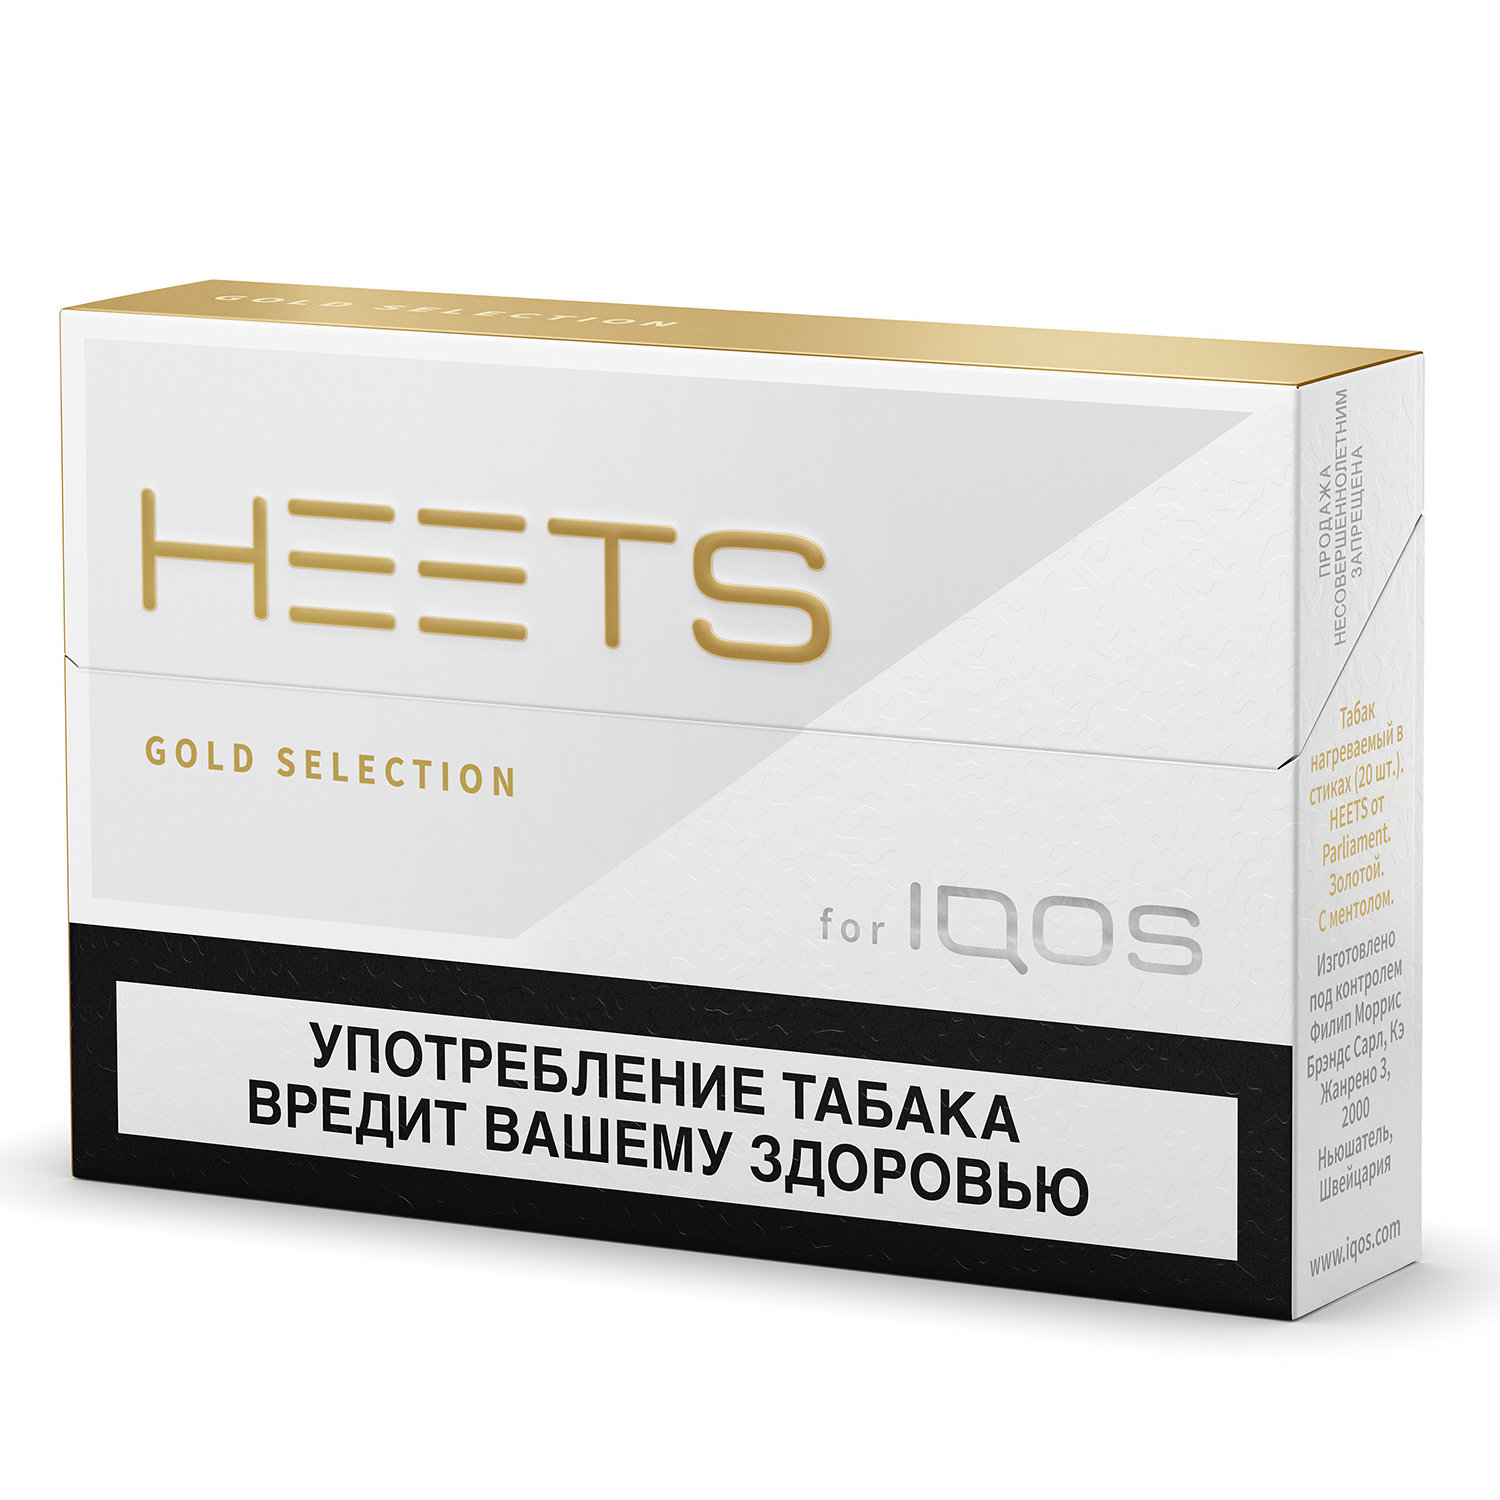 Табачные стики HEETS от Parliament для IQOS Gold Selection